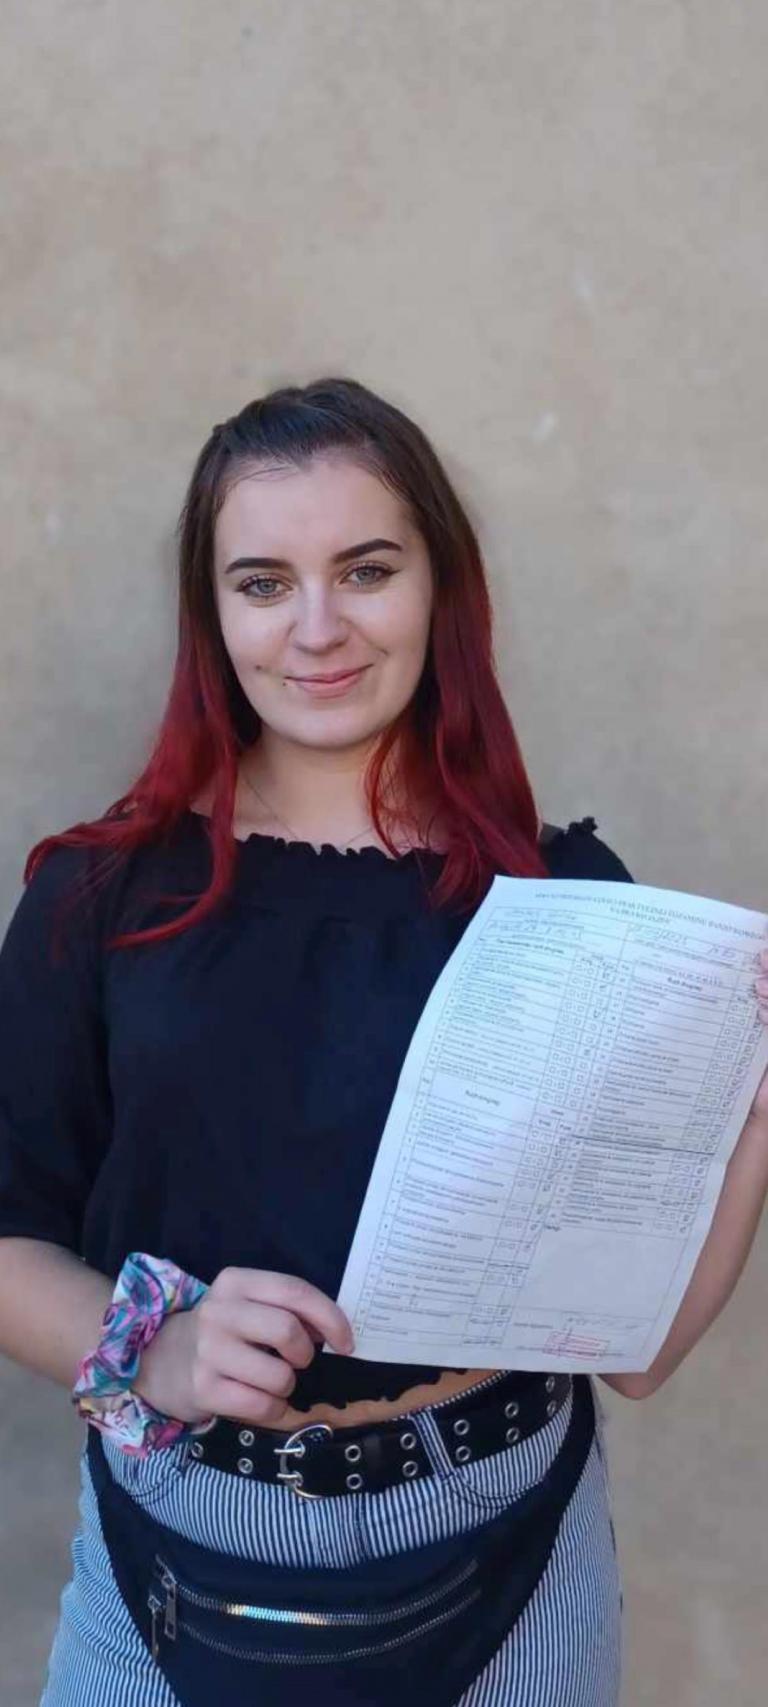 Absolwentka HP Ziębice  zdała egzamin na  prawo jazdy  dzięki udziałowi w projekcie,, Aktywni górą!’’